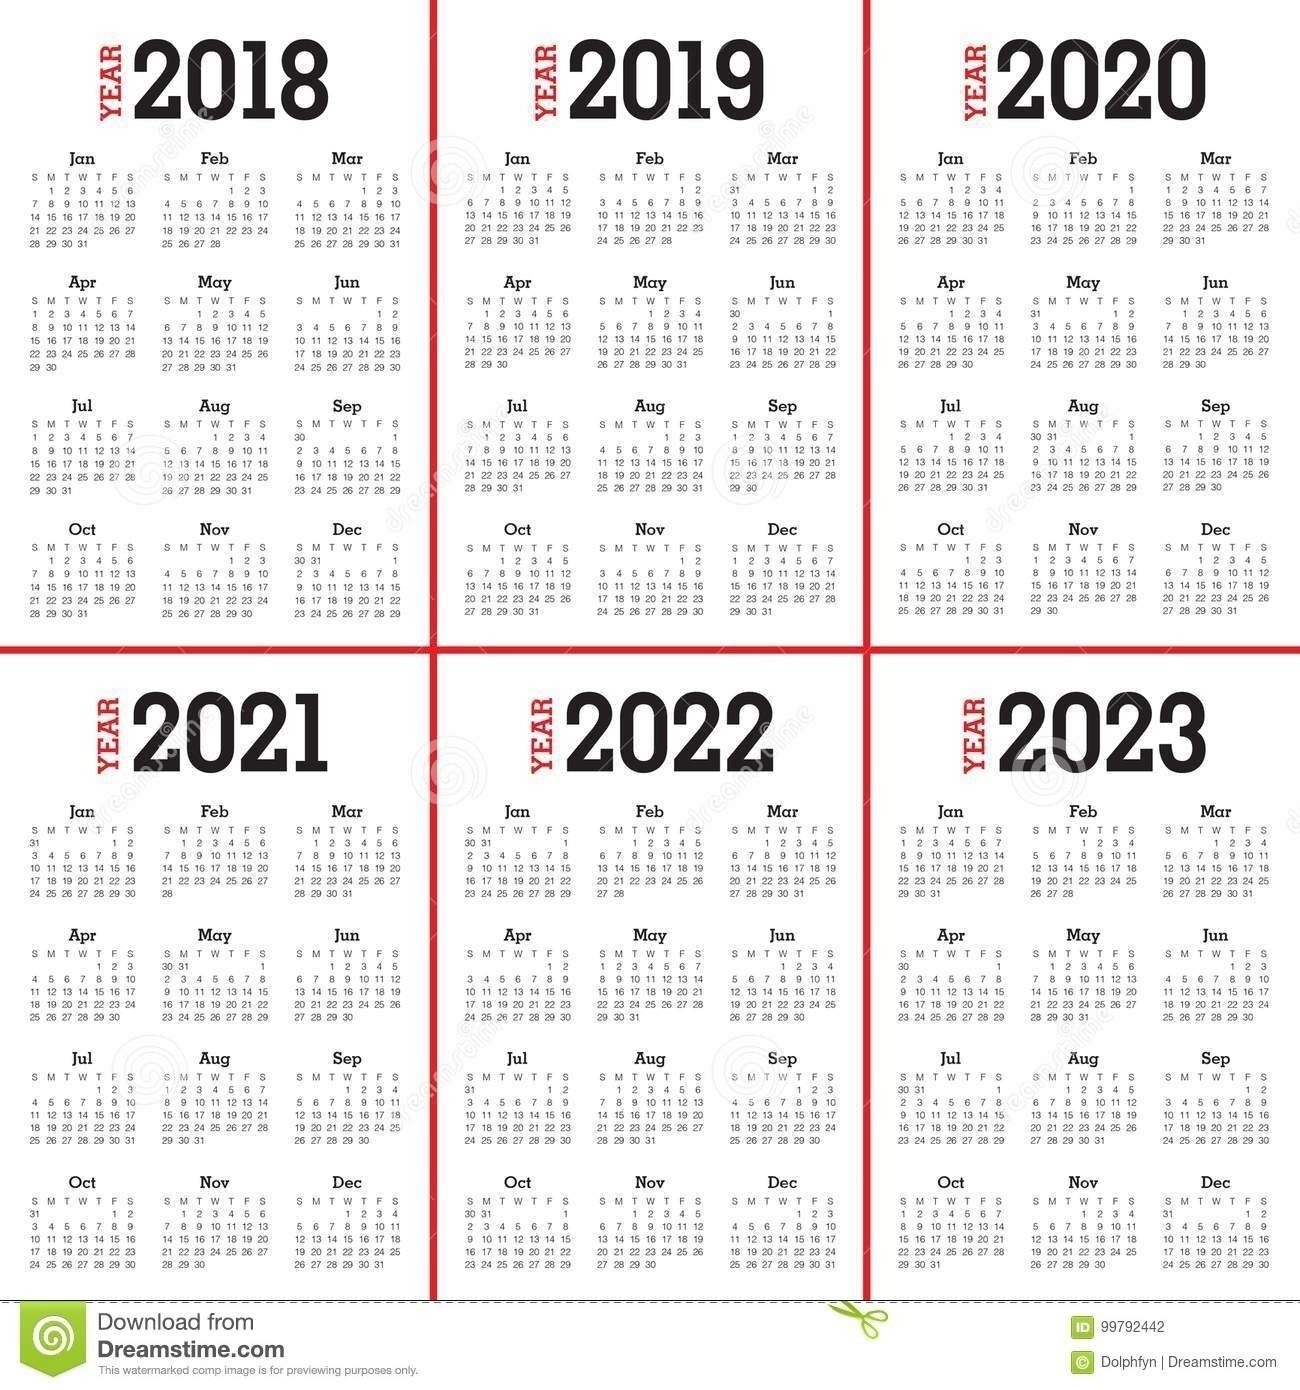 Calendar August 2019 To May 2020 | Calendar Template